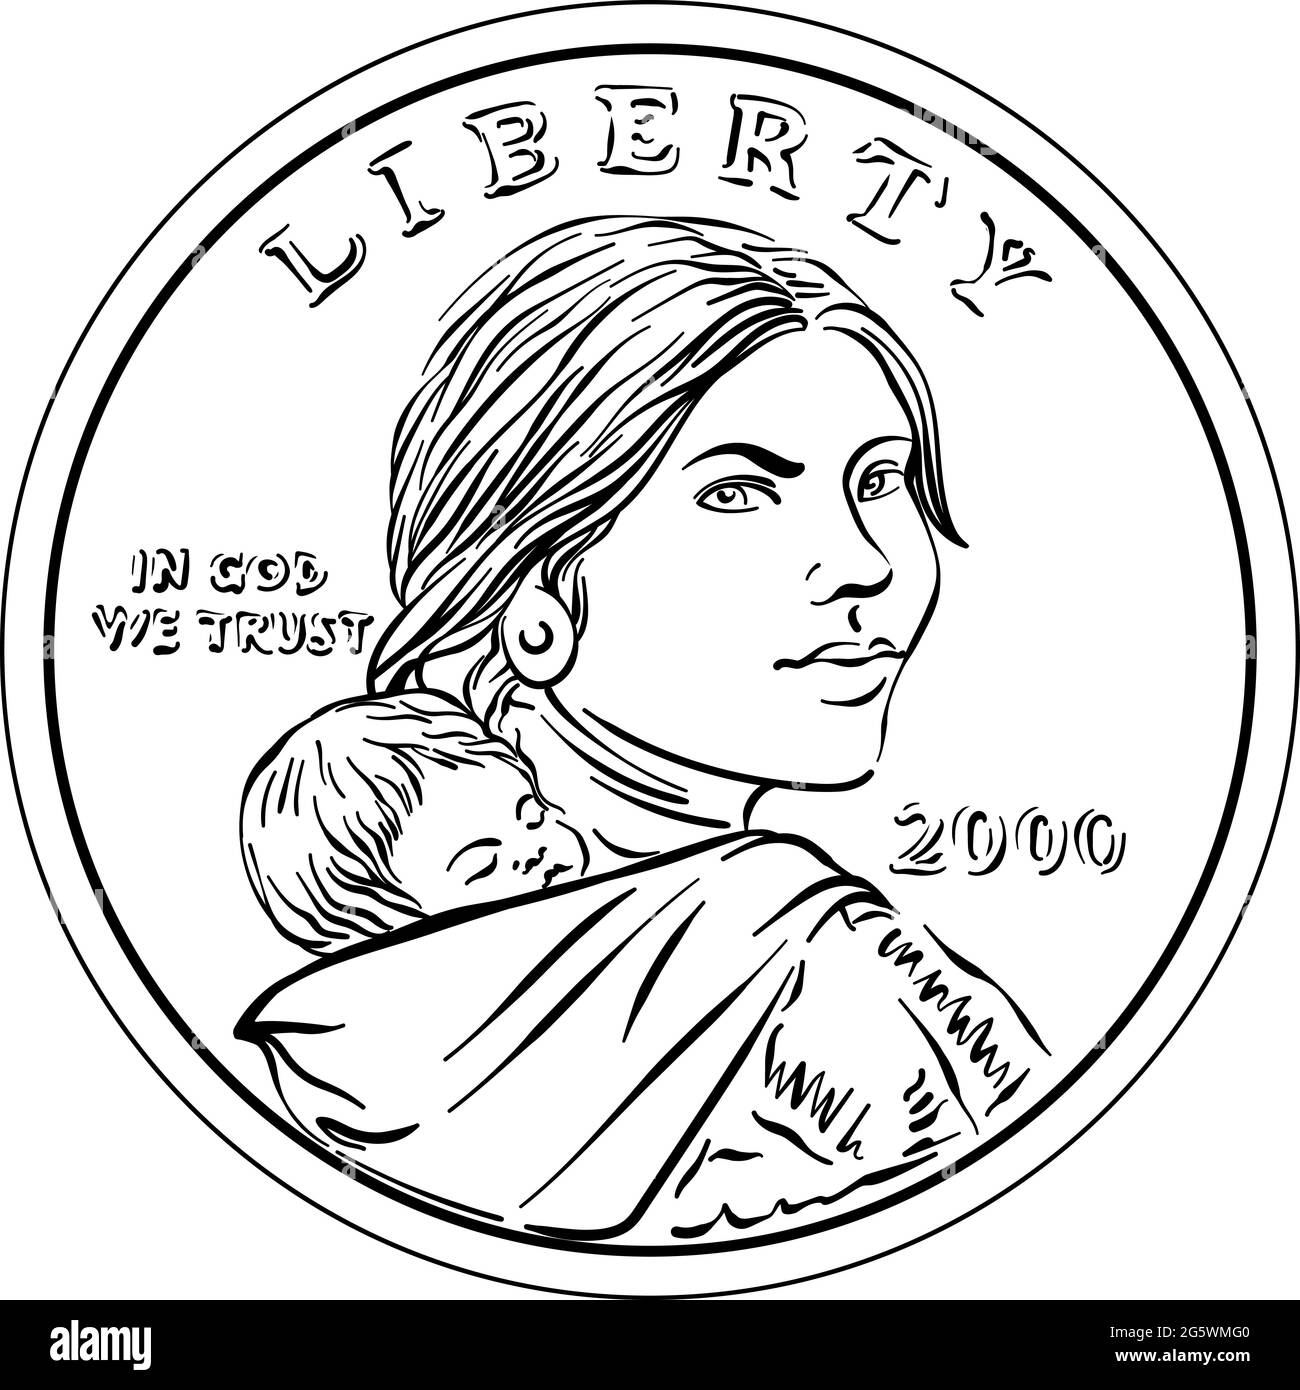 Argent américain Sacagawea dollar, noir et blanc, Sacagawea et son enfant sur l'arrière Illustration de Vecteur